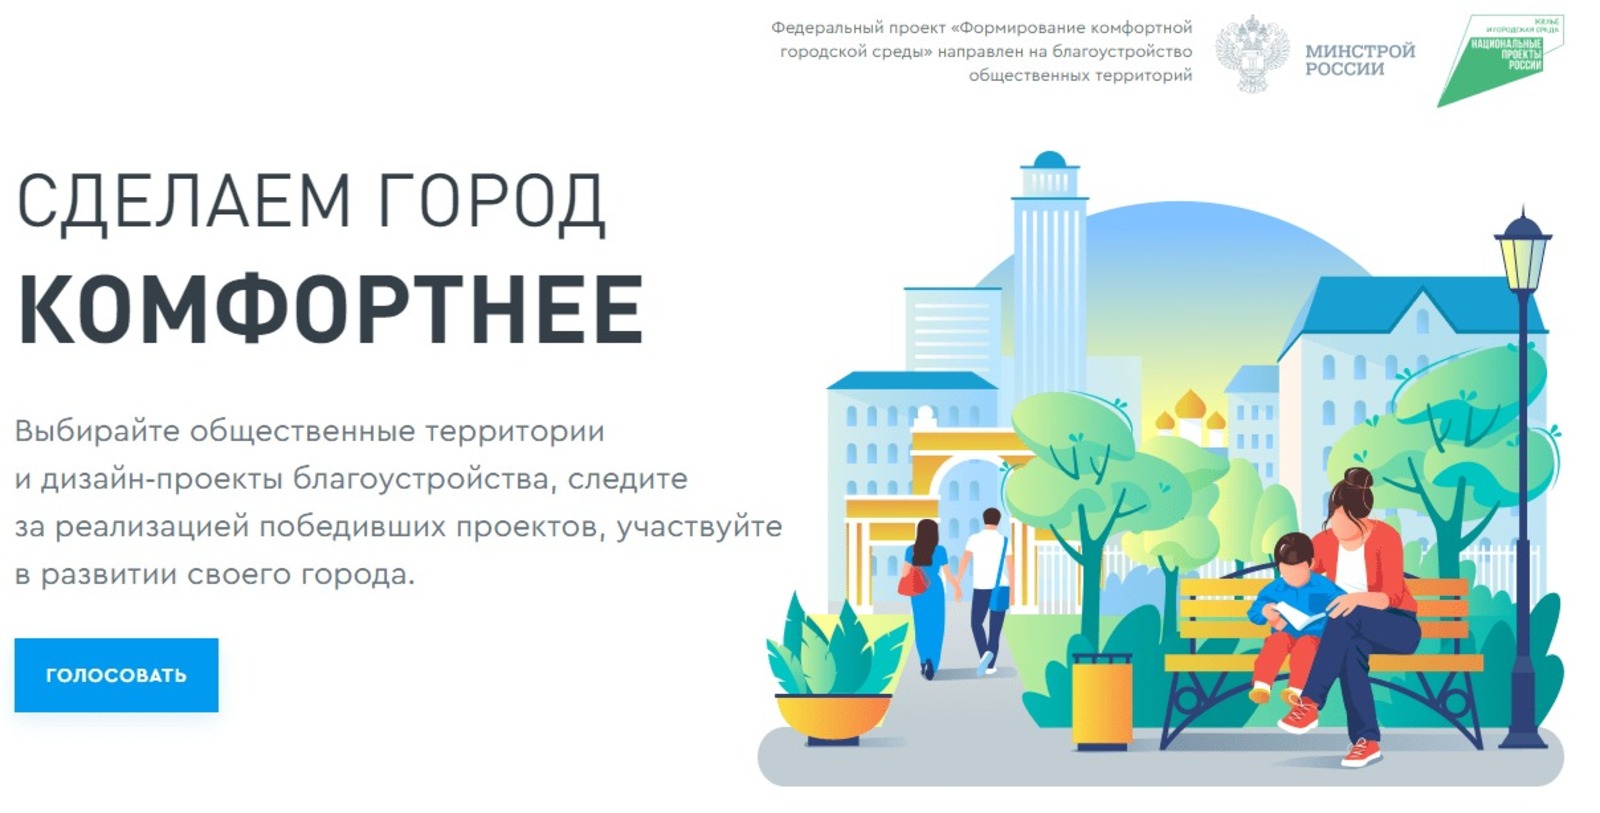 Начинается второе Всероссийское онлайн-голосование по отбору общественных территорий для благоустройства